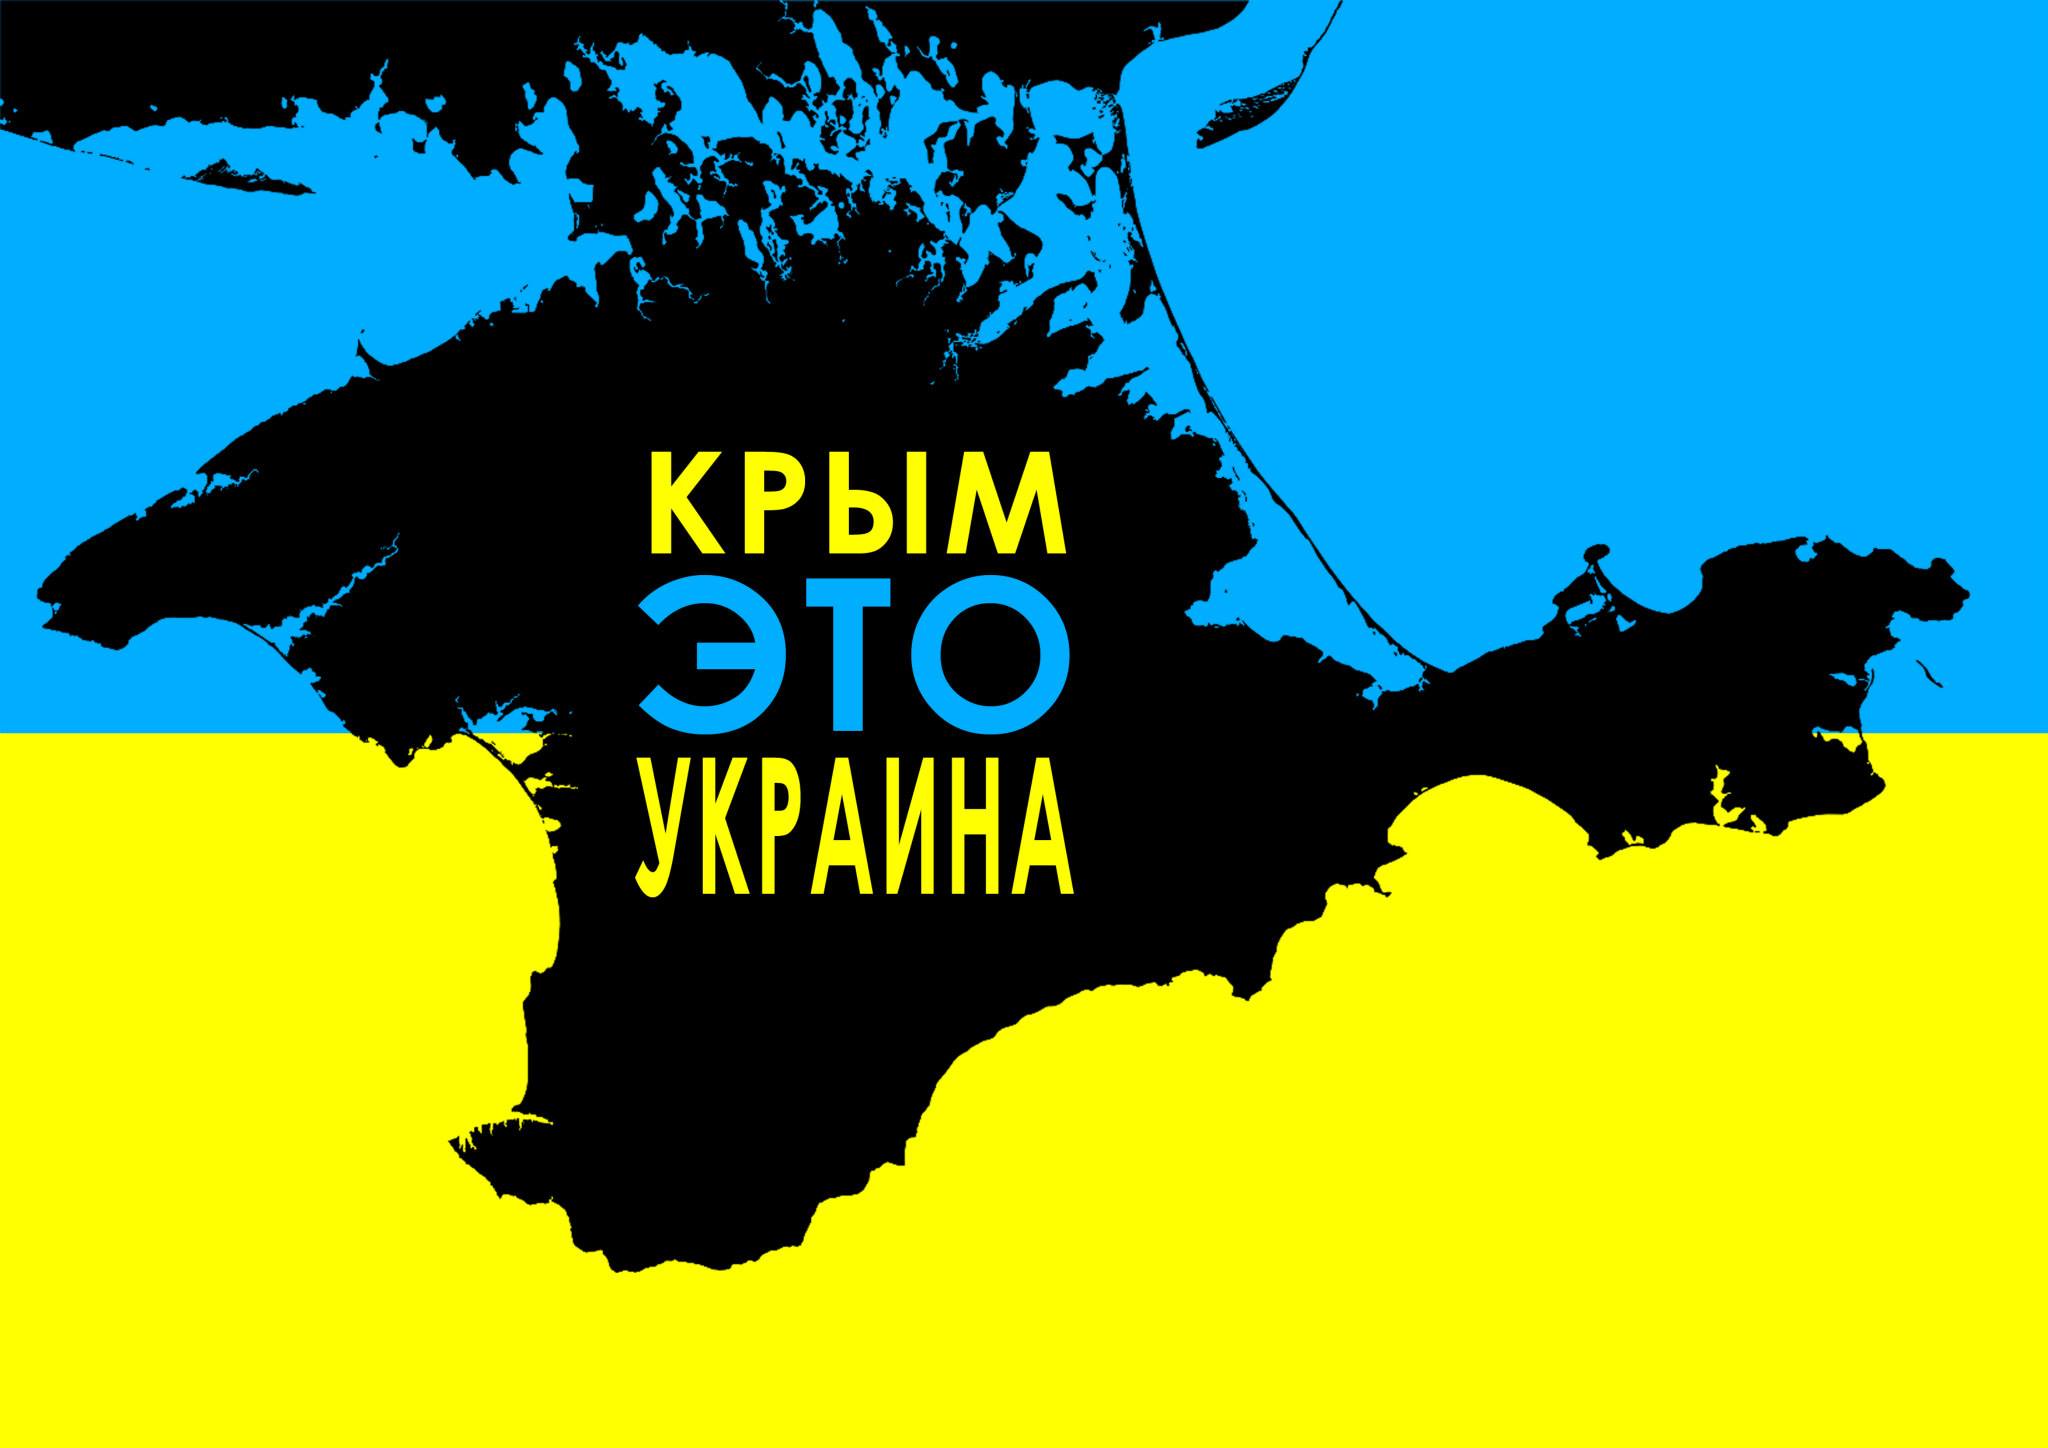 Российские чиновники испугались украинского телевещания на Крым: попытаются блокировать сигнал 